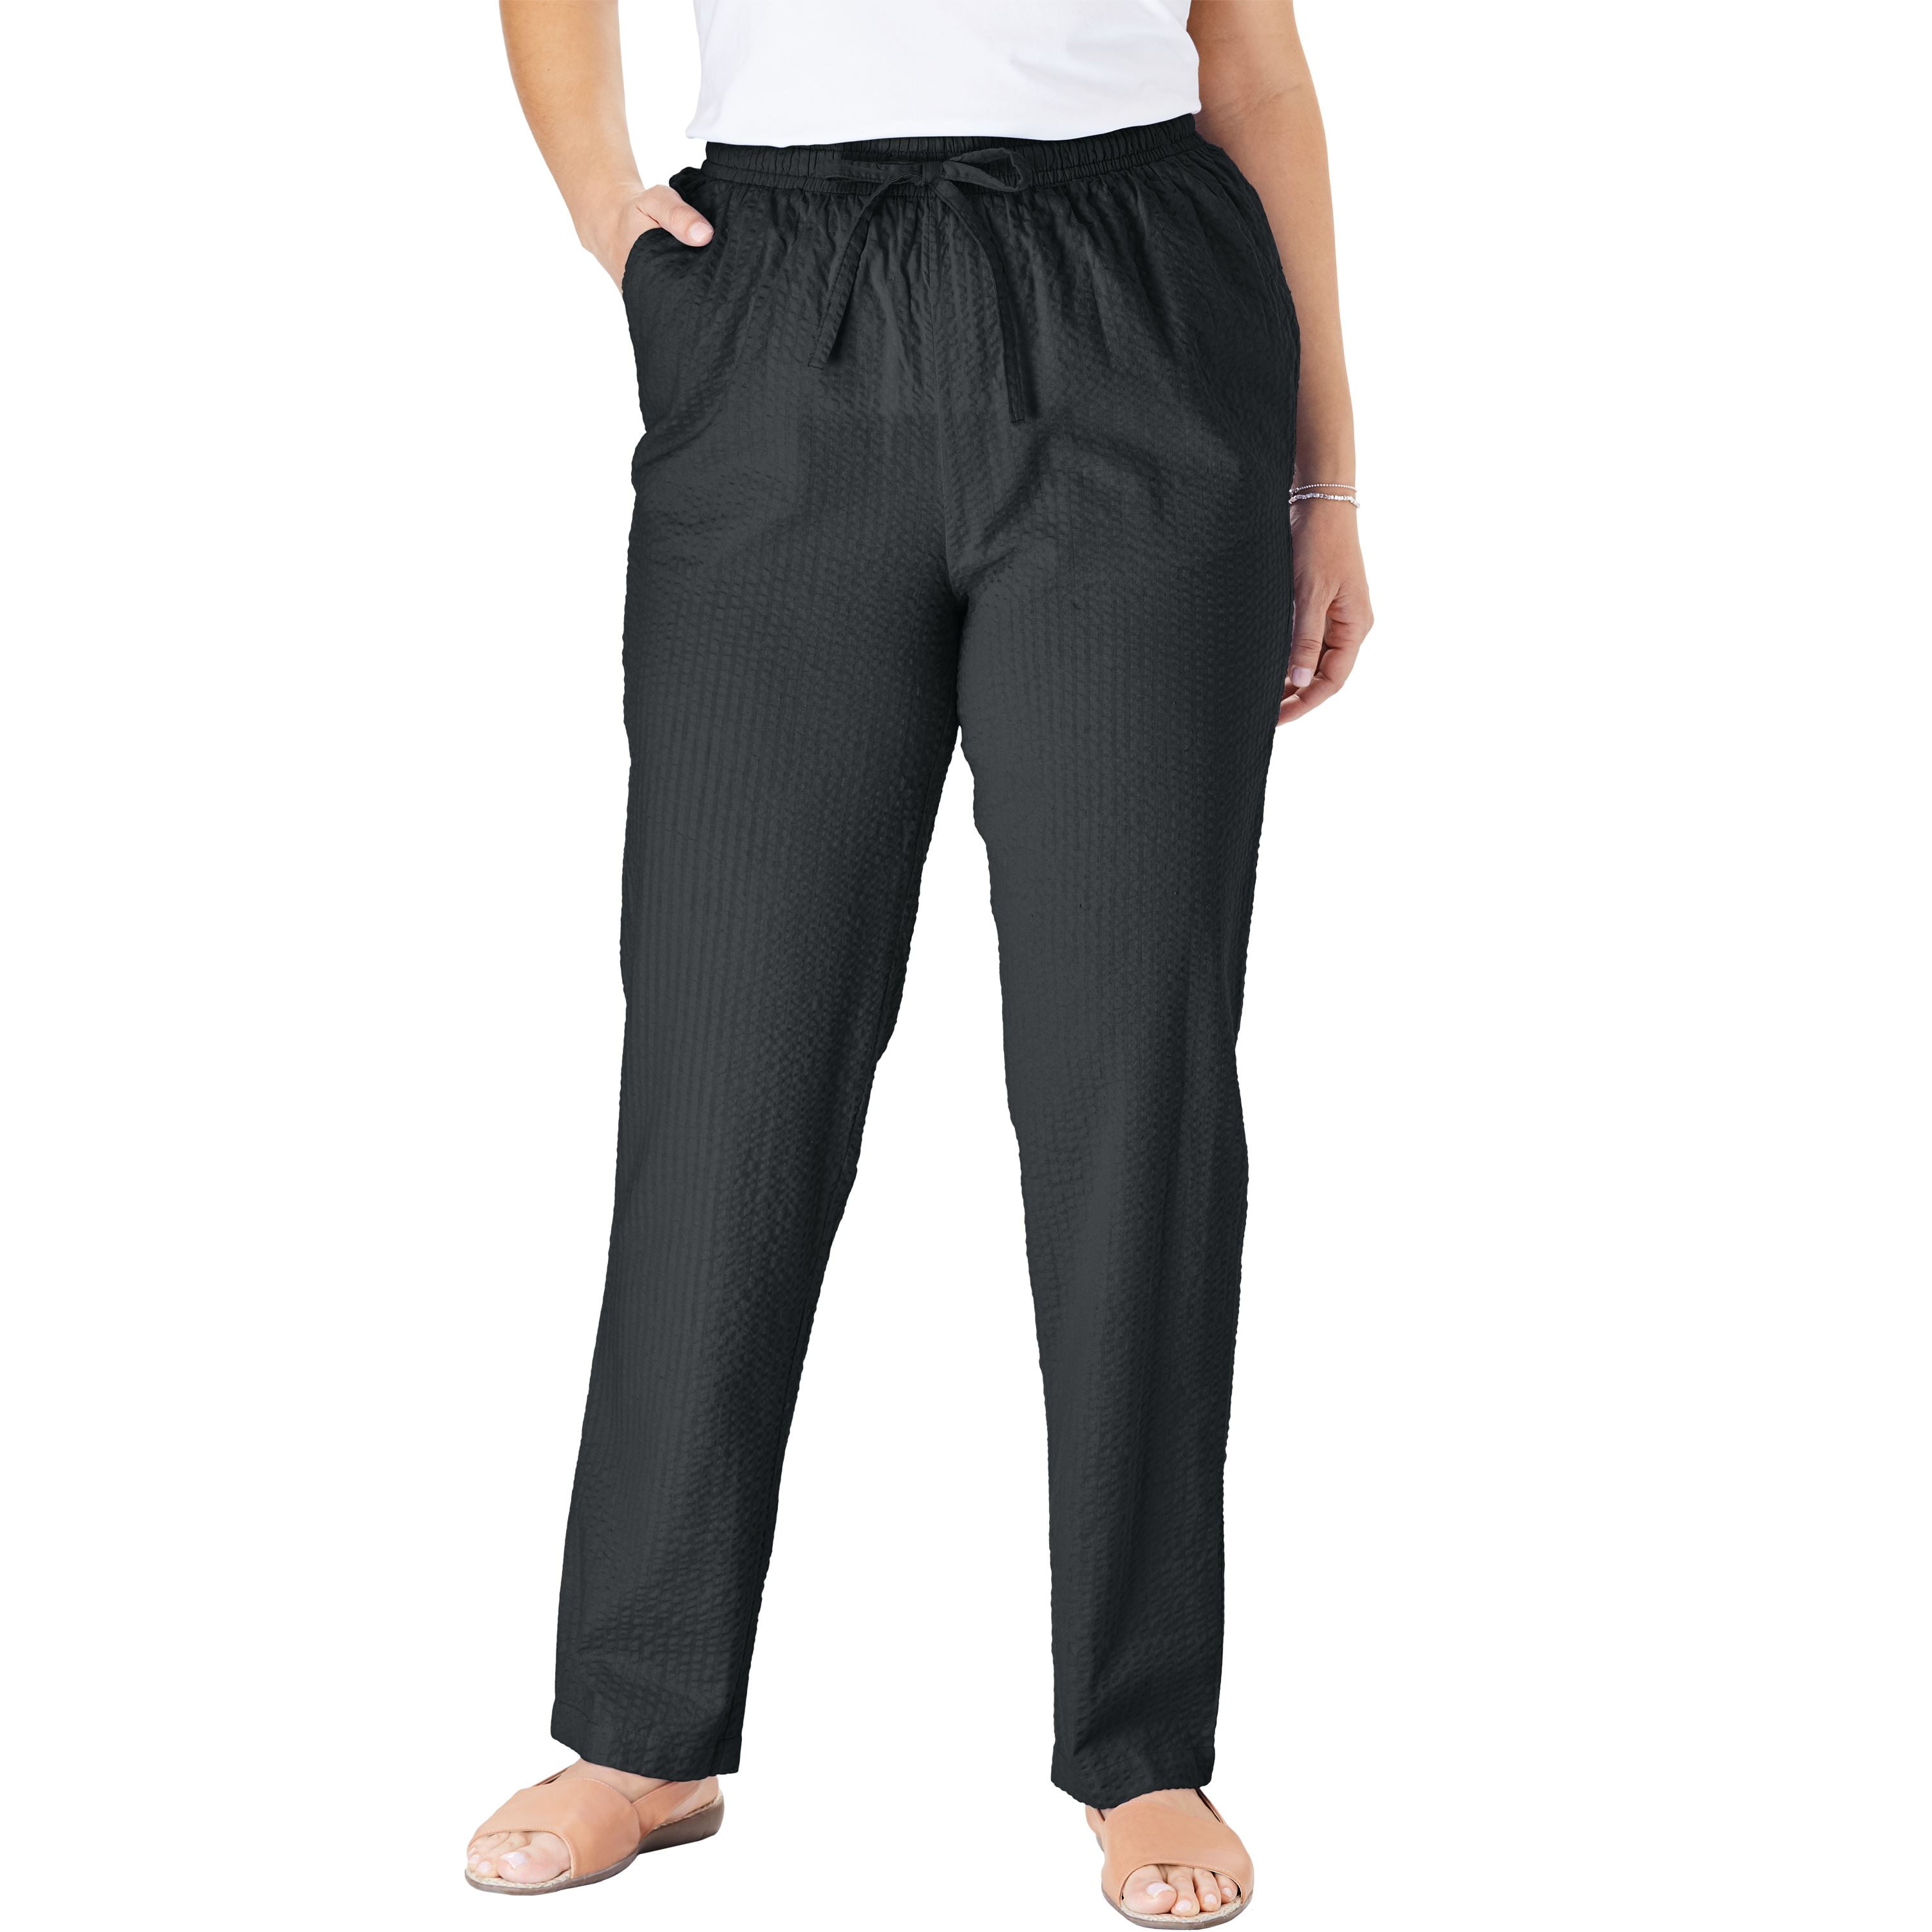 Plus Size Petite Seersucker Pants - Walmart.com